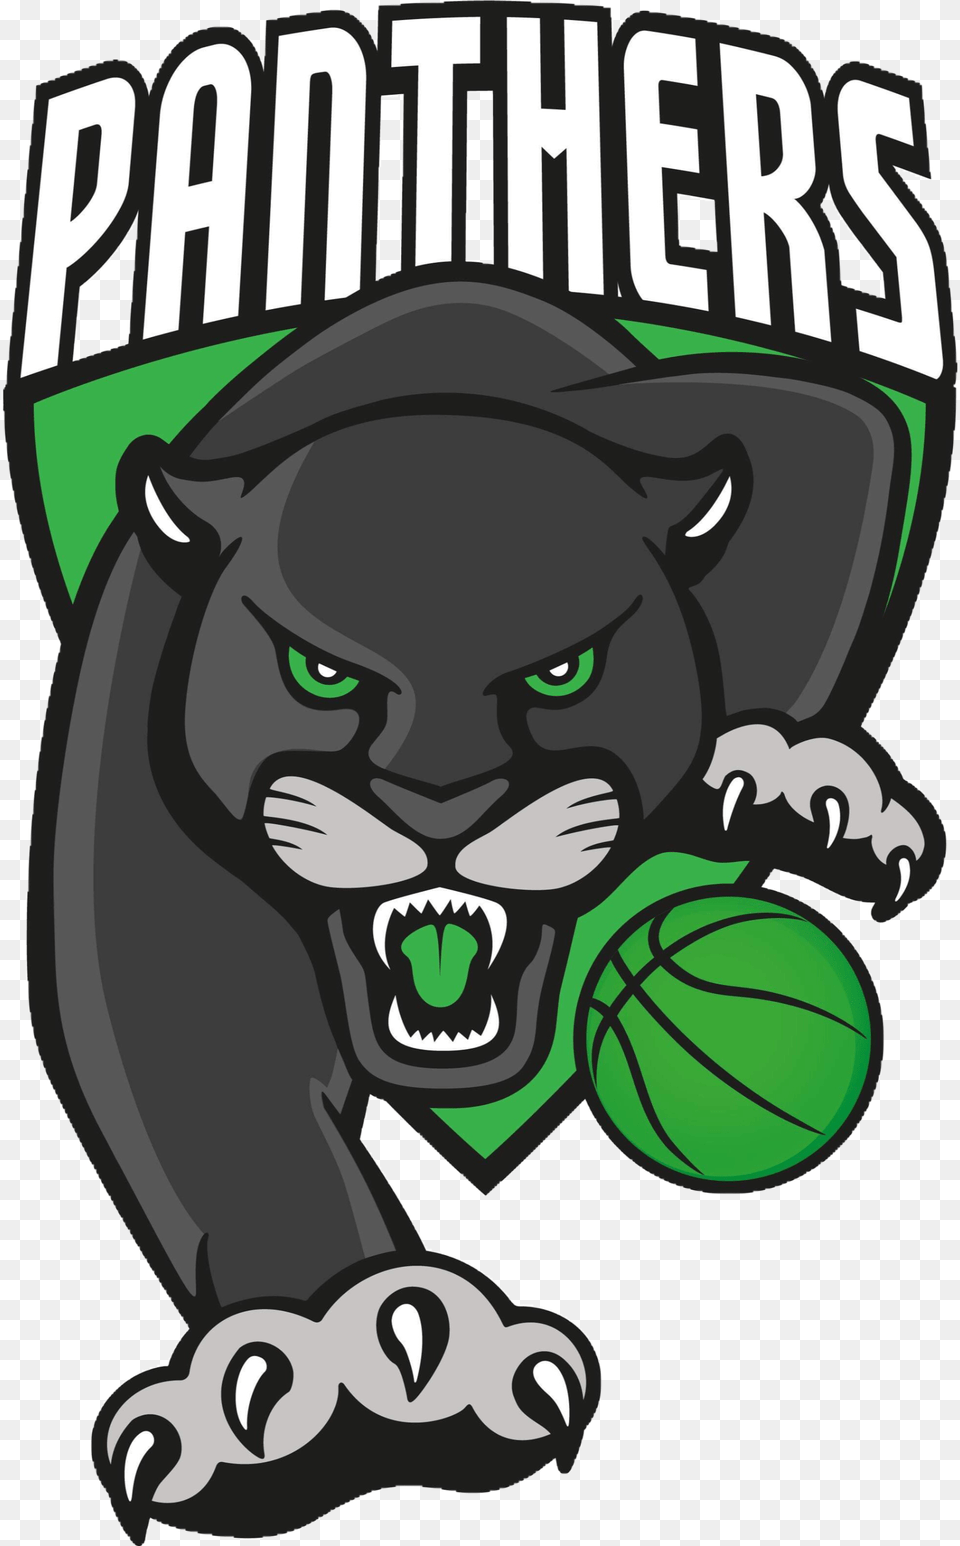 Panthers Basketball Club Florida International University Panthers, Animal, Mammal, Panther, Wildlife Free Transparent Png